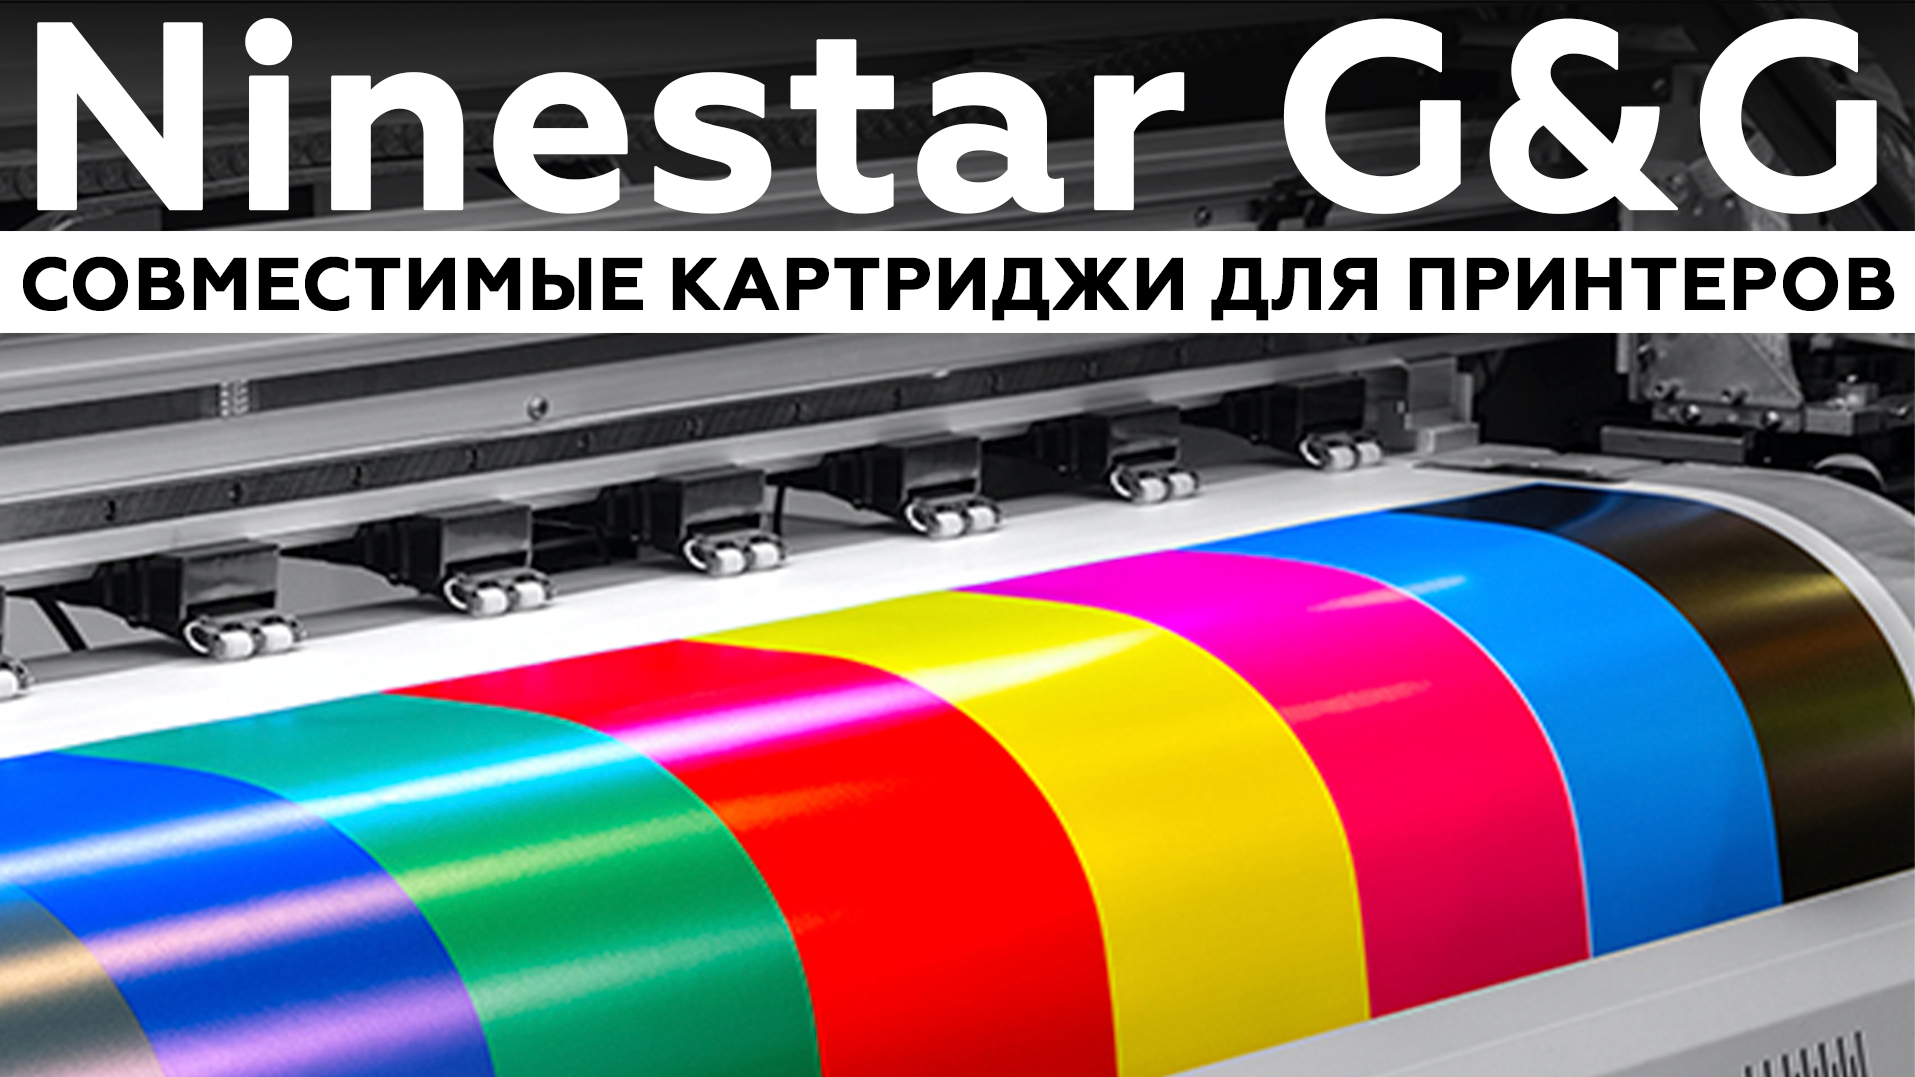 Ninestar G&G — совместимые картриджи для лазерных принтеров и МФУ